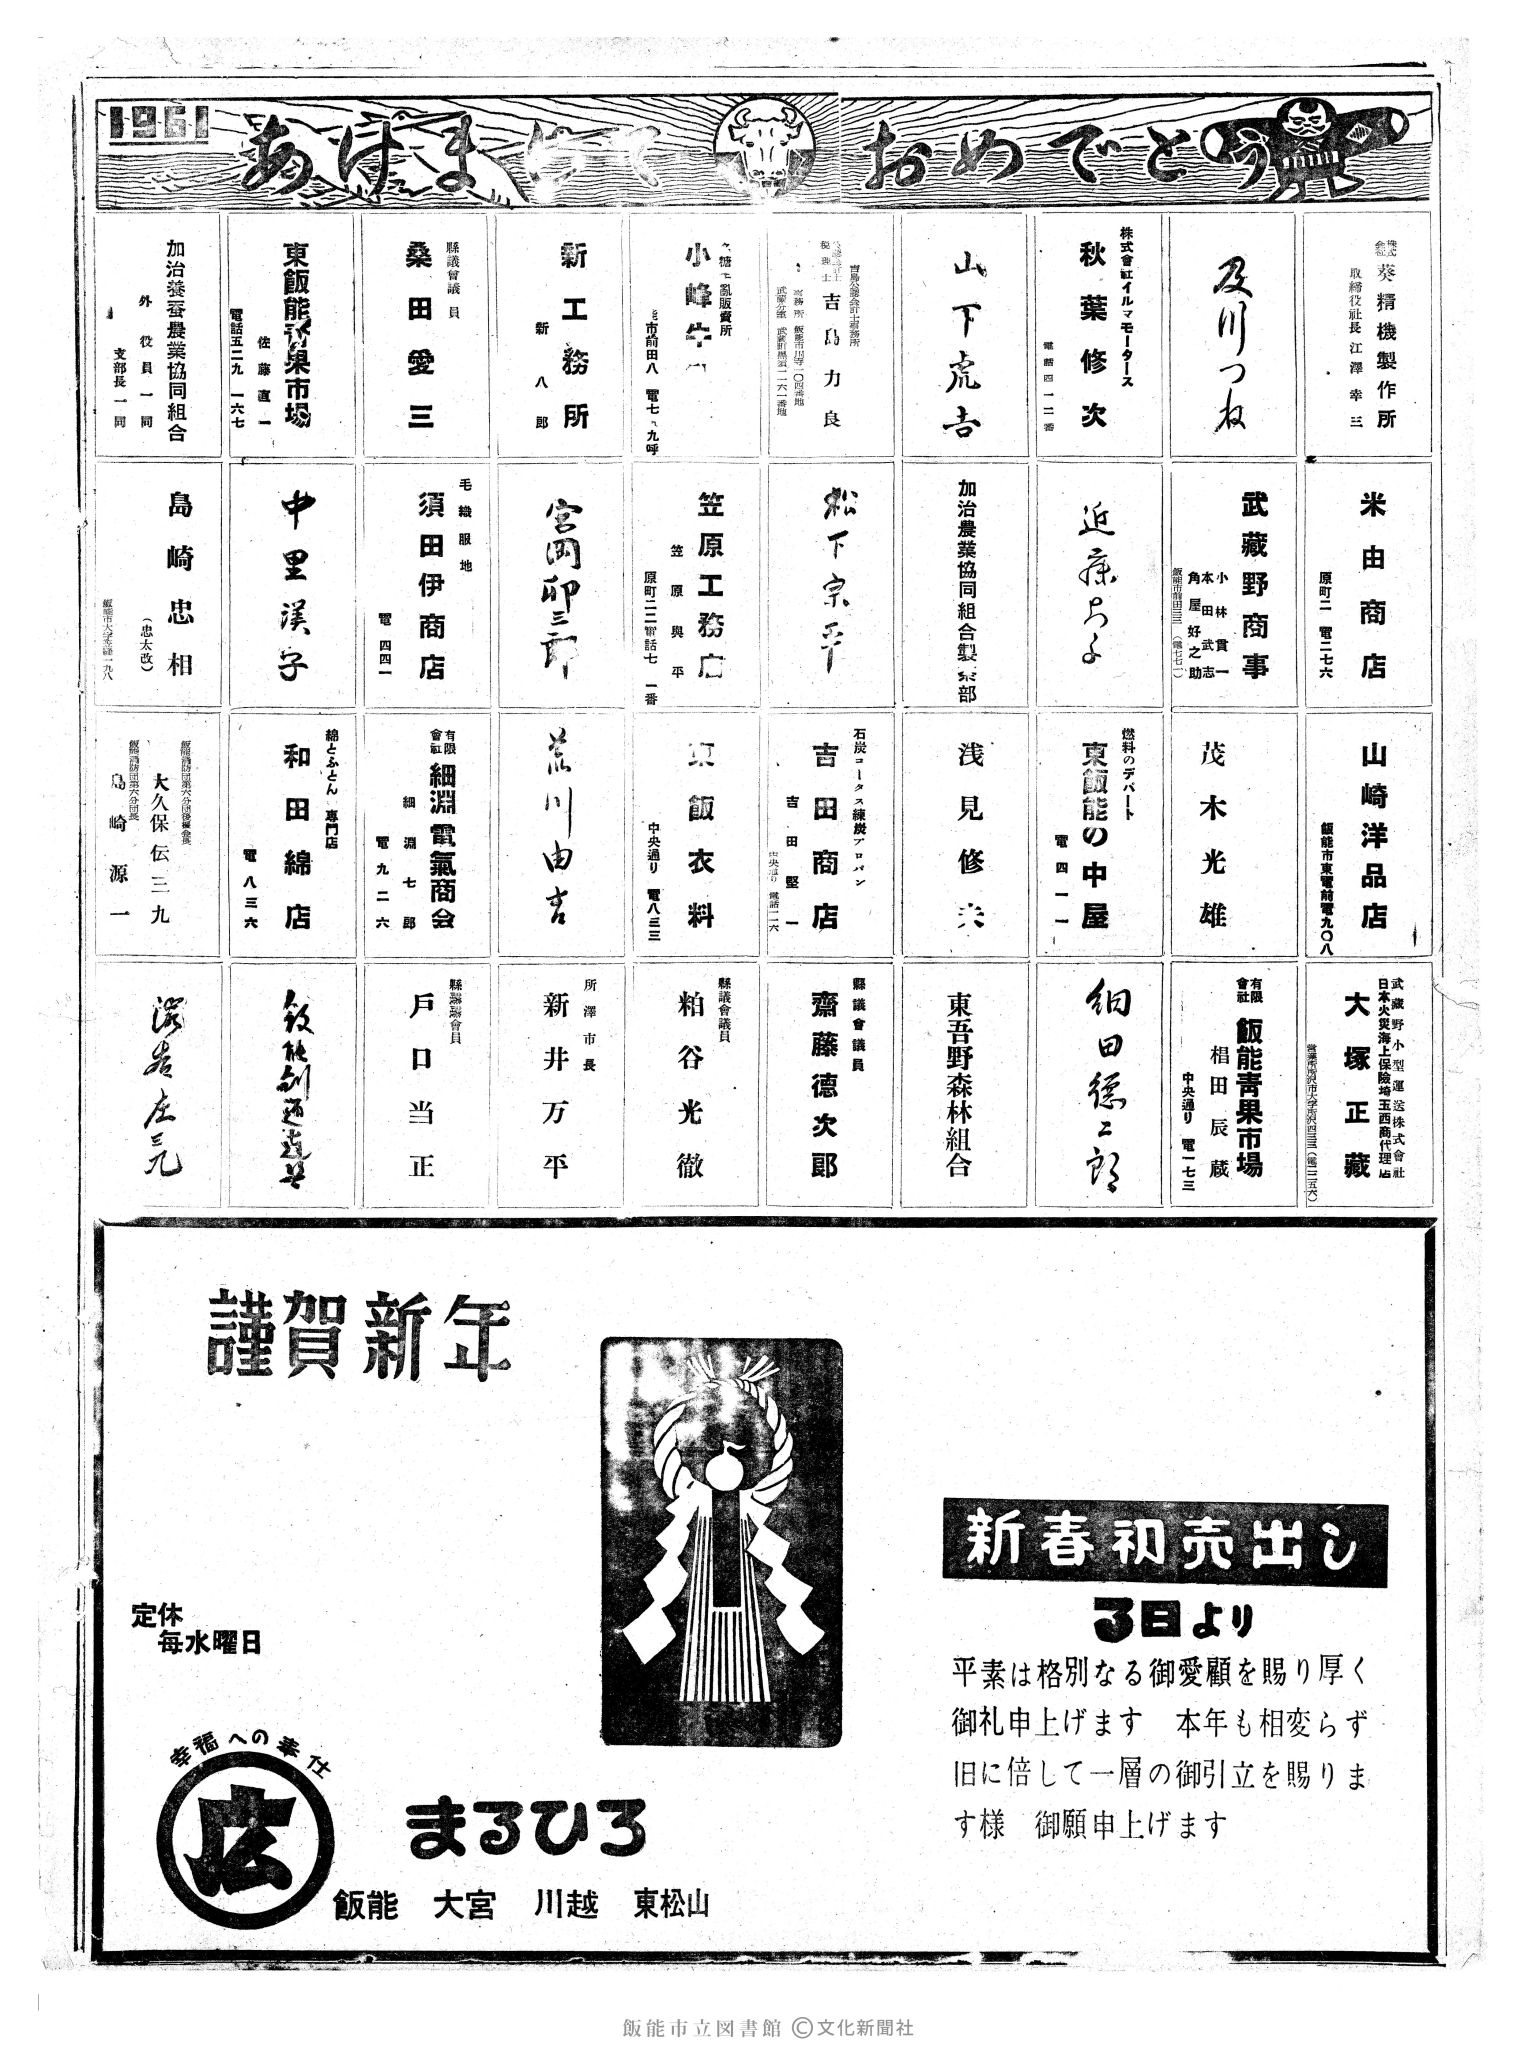 昭和36年1月1日8面 (第3730号) 広告ページ